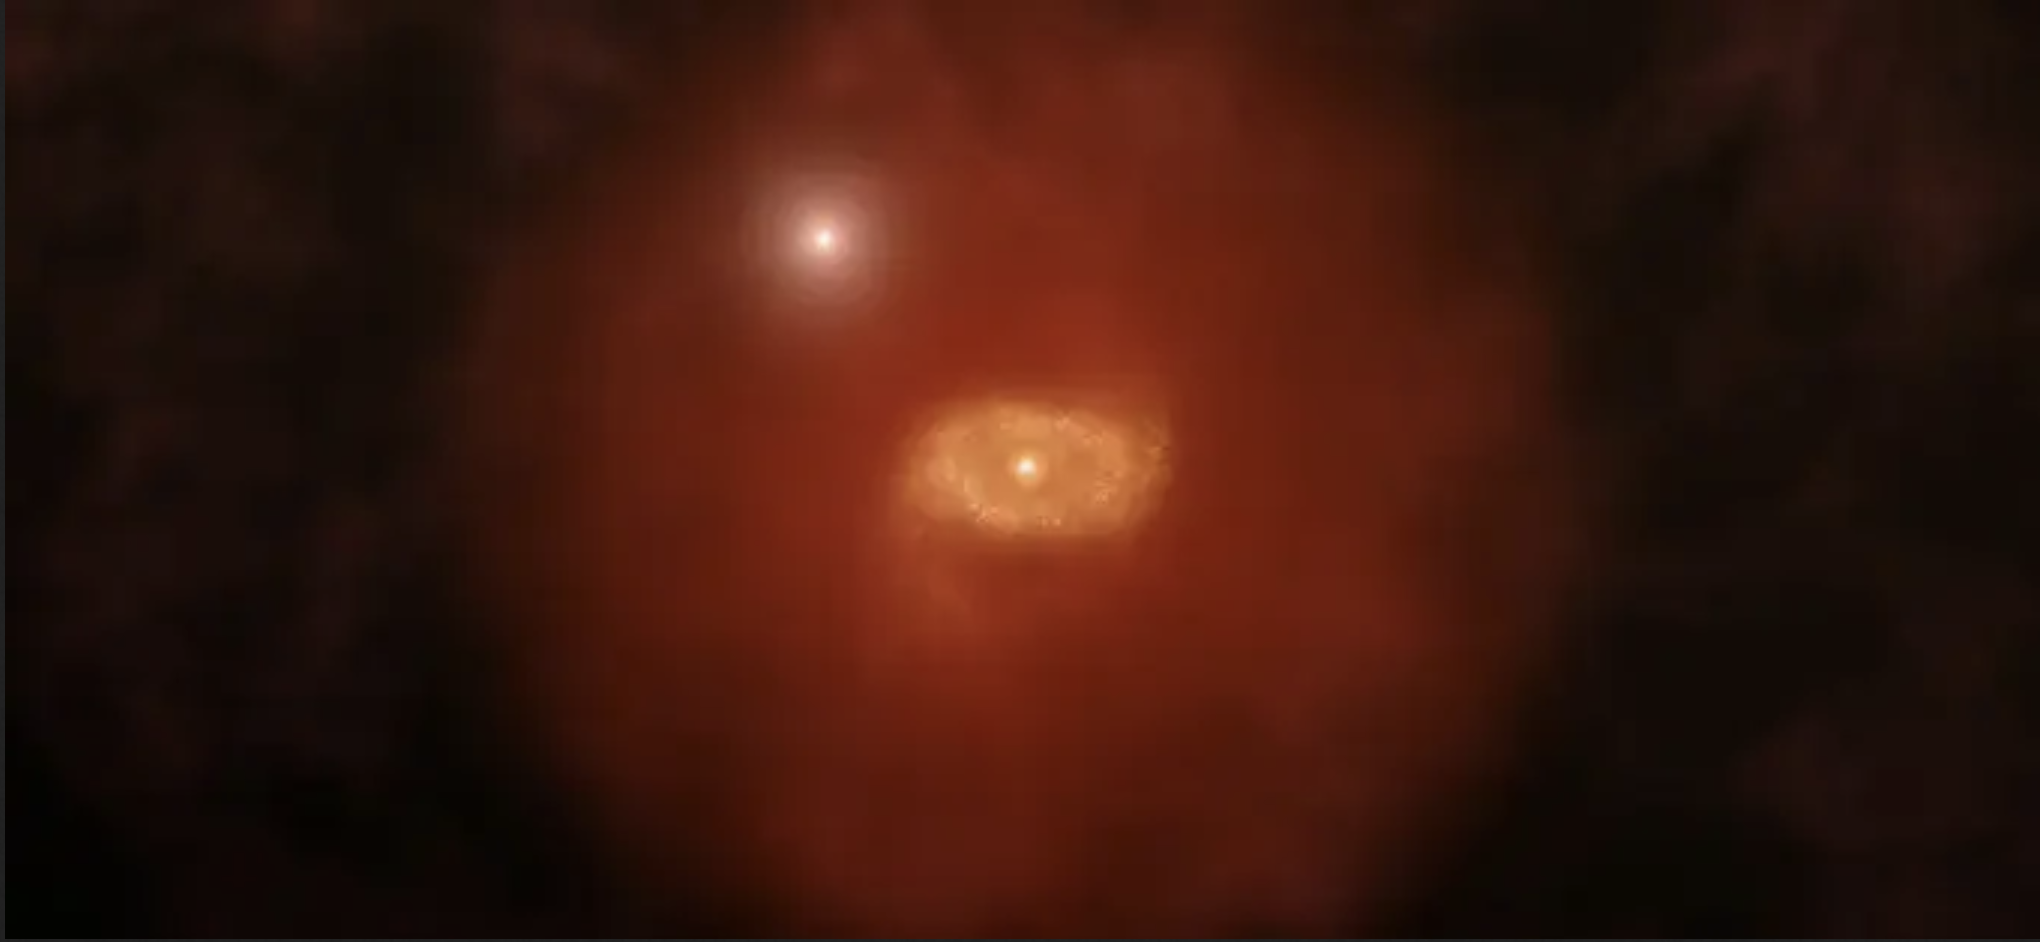 Jóvenes galaxias están envueltas en enormes “atmósferas”